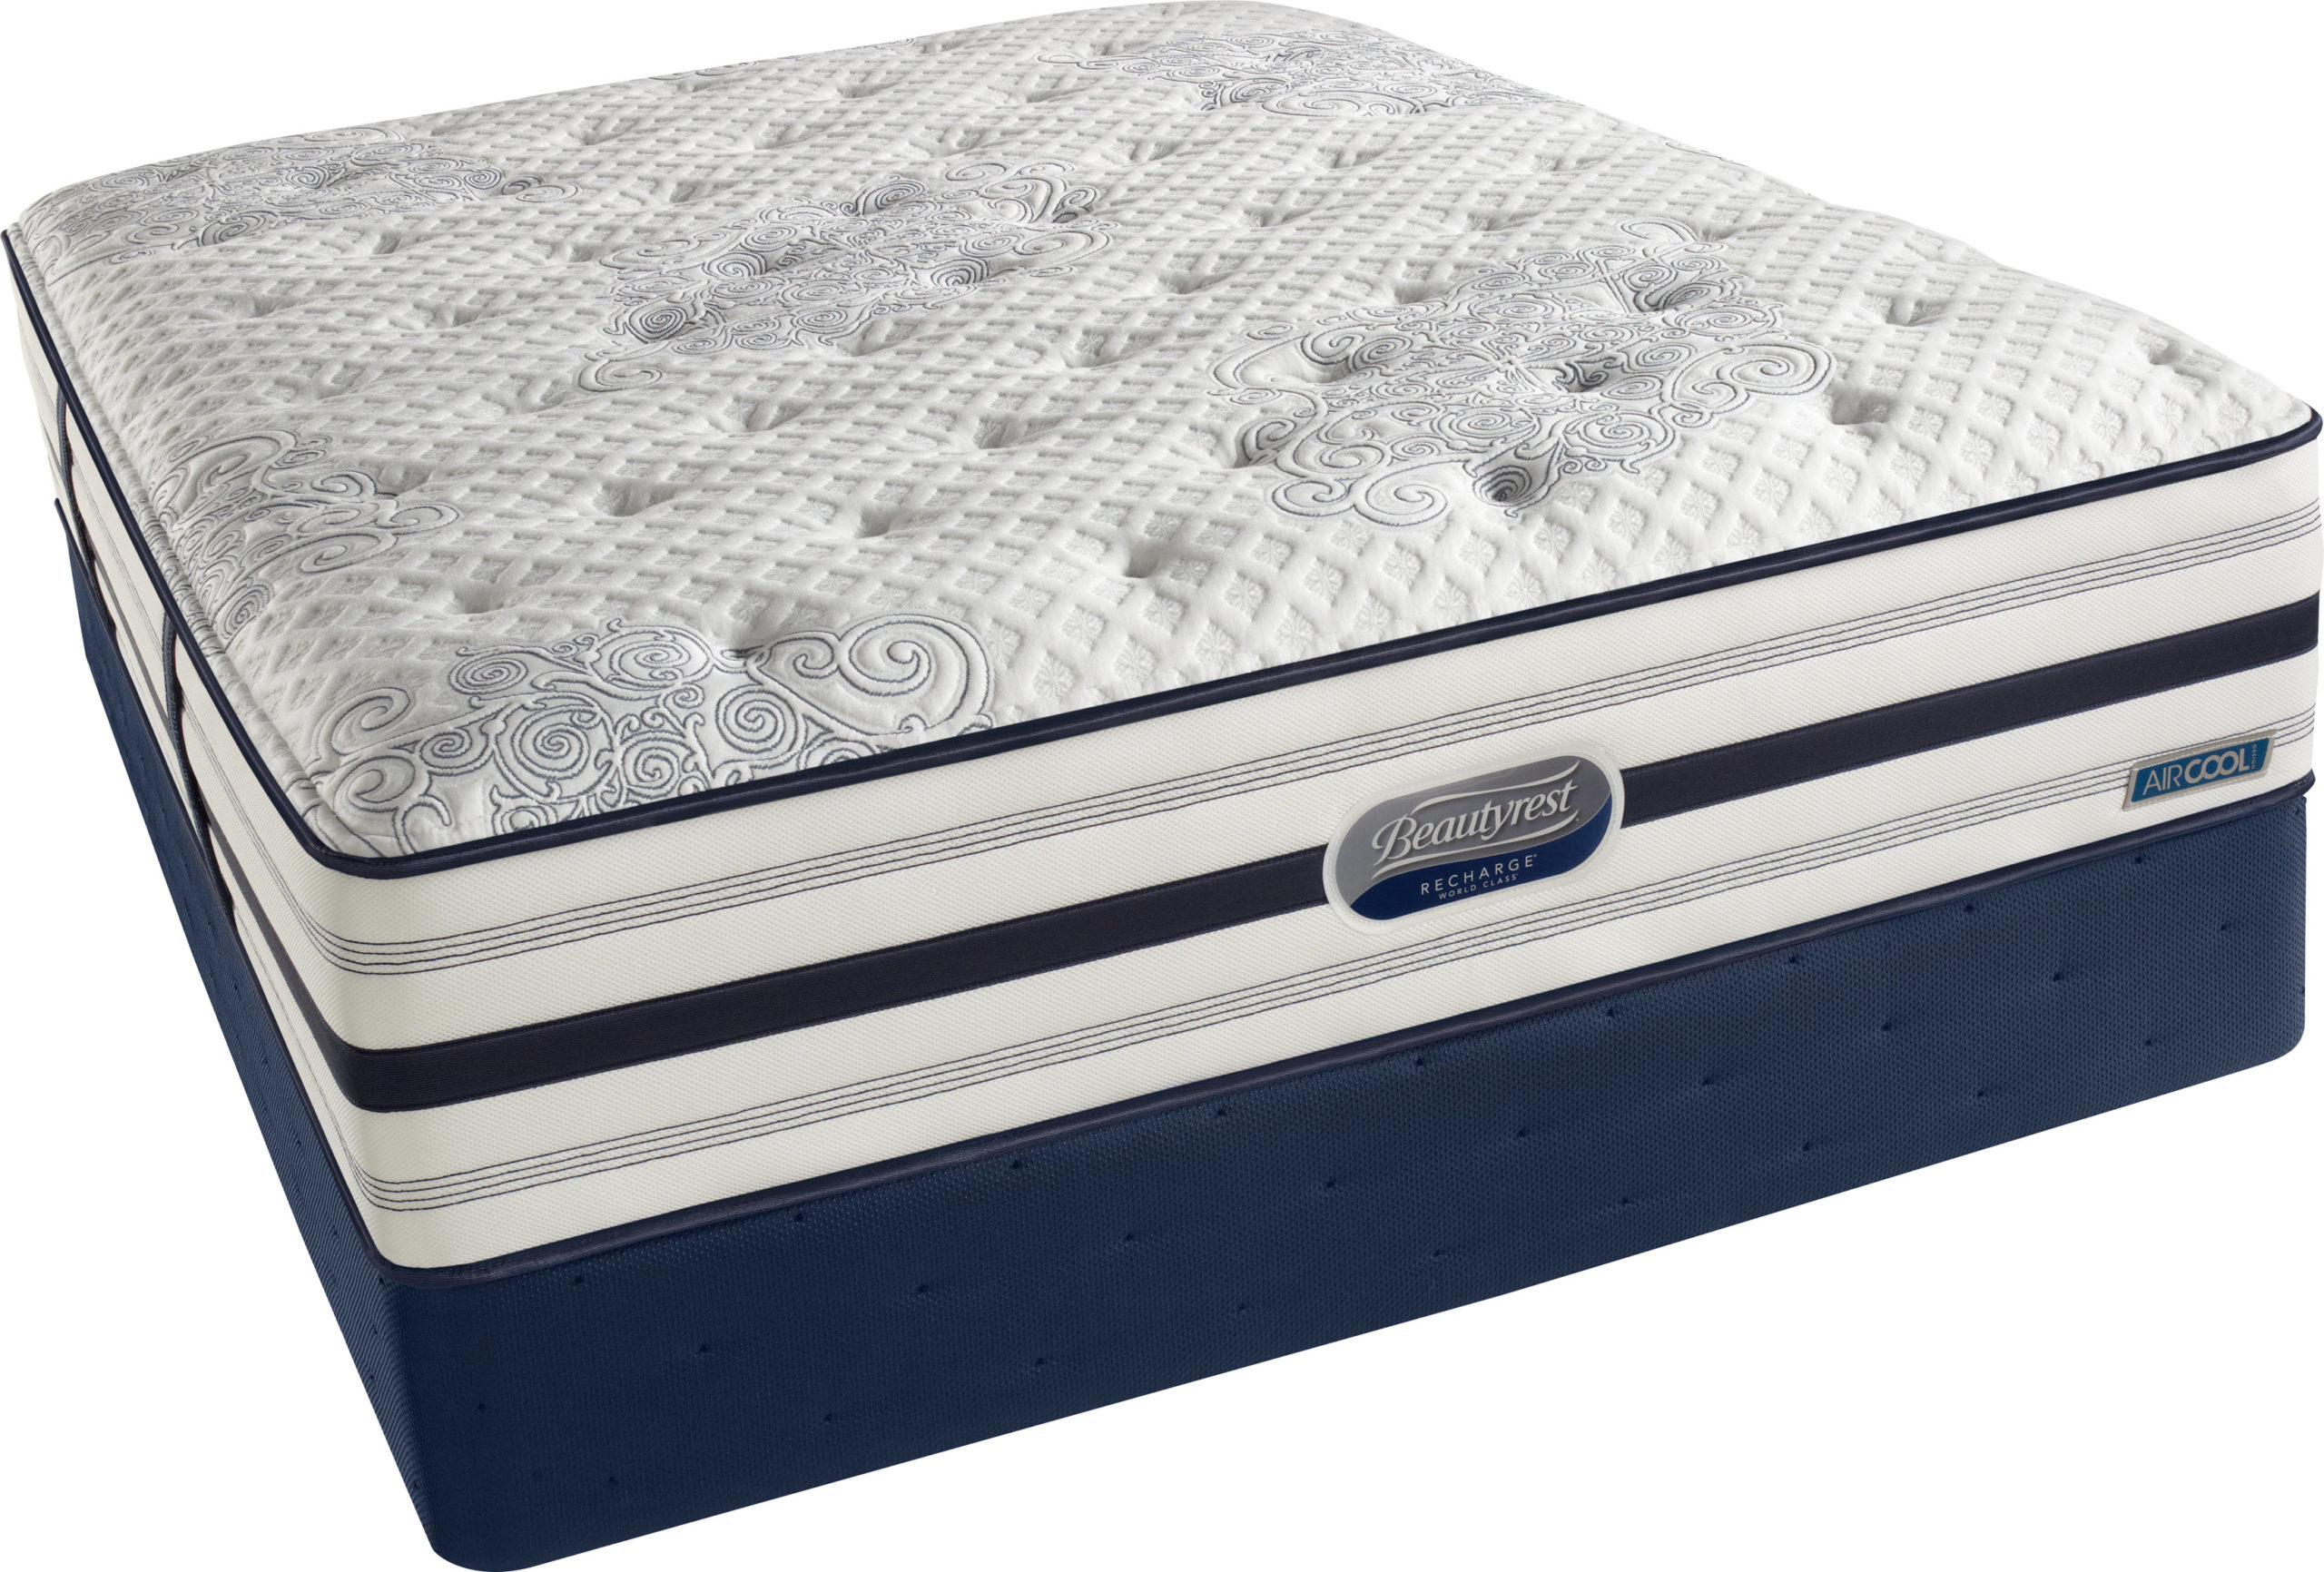 beautyrest world class luxury firm mattress